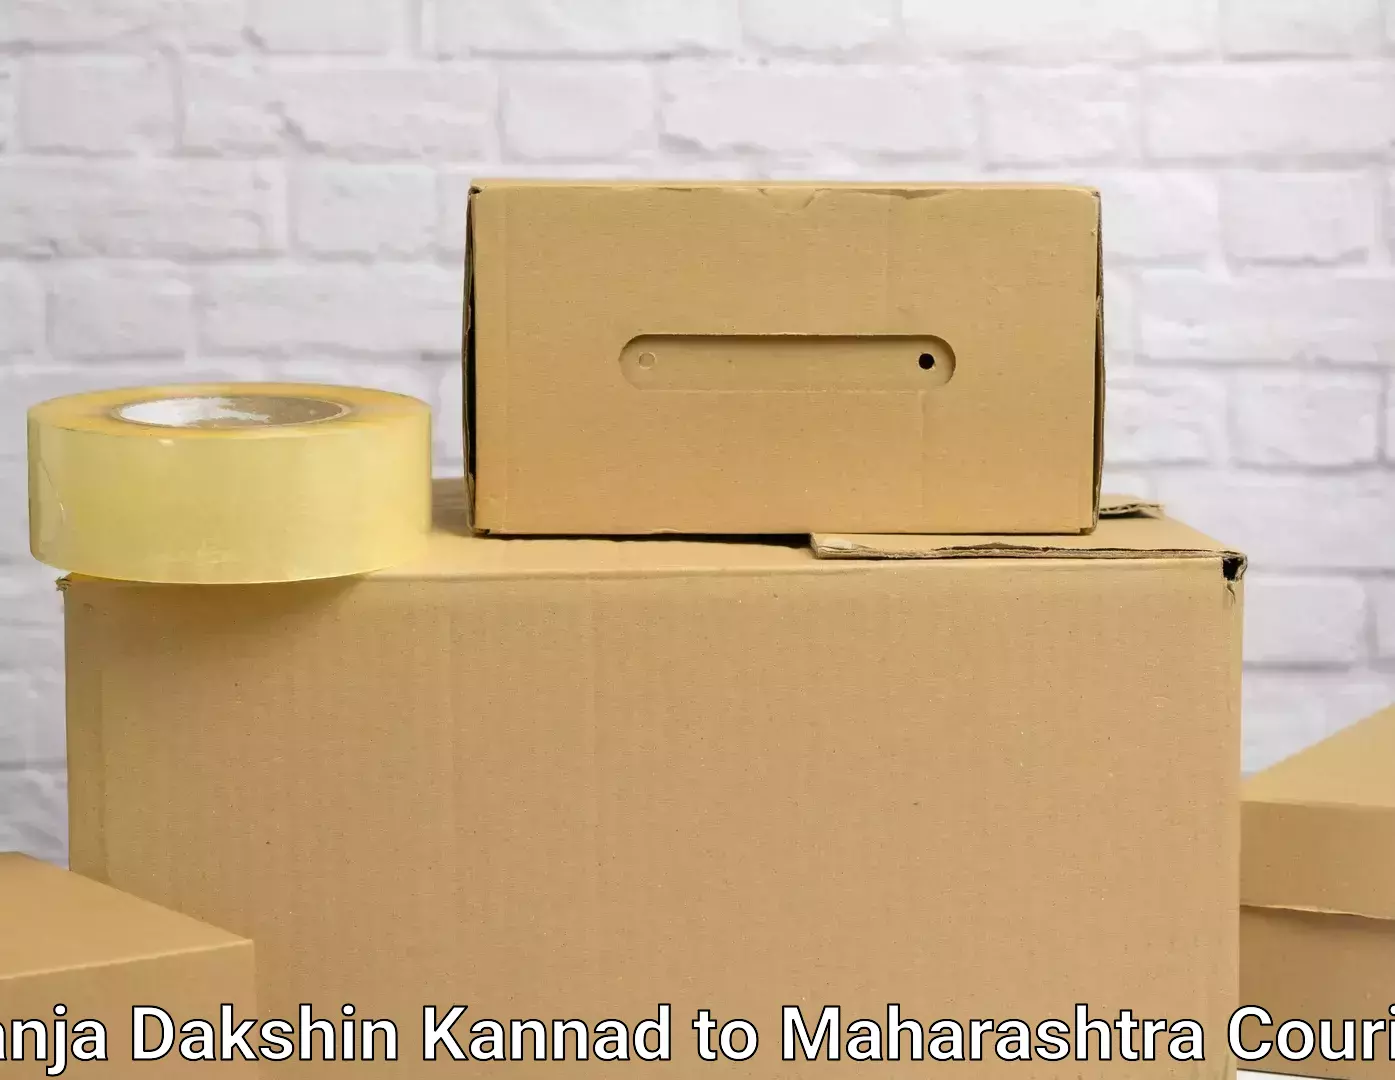 Affordable moving solutions Panja Dakshin Kannad to Satara